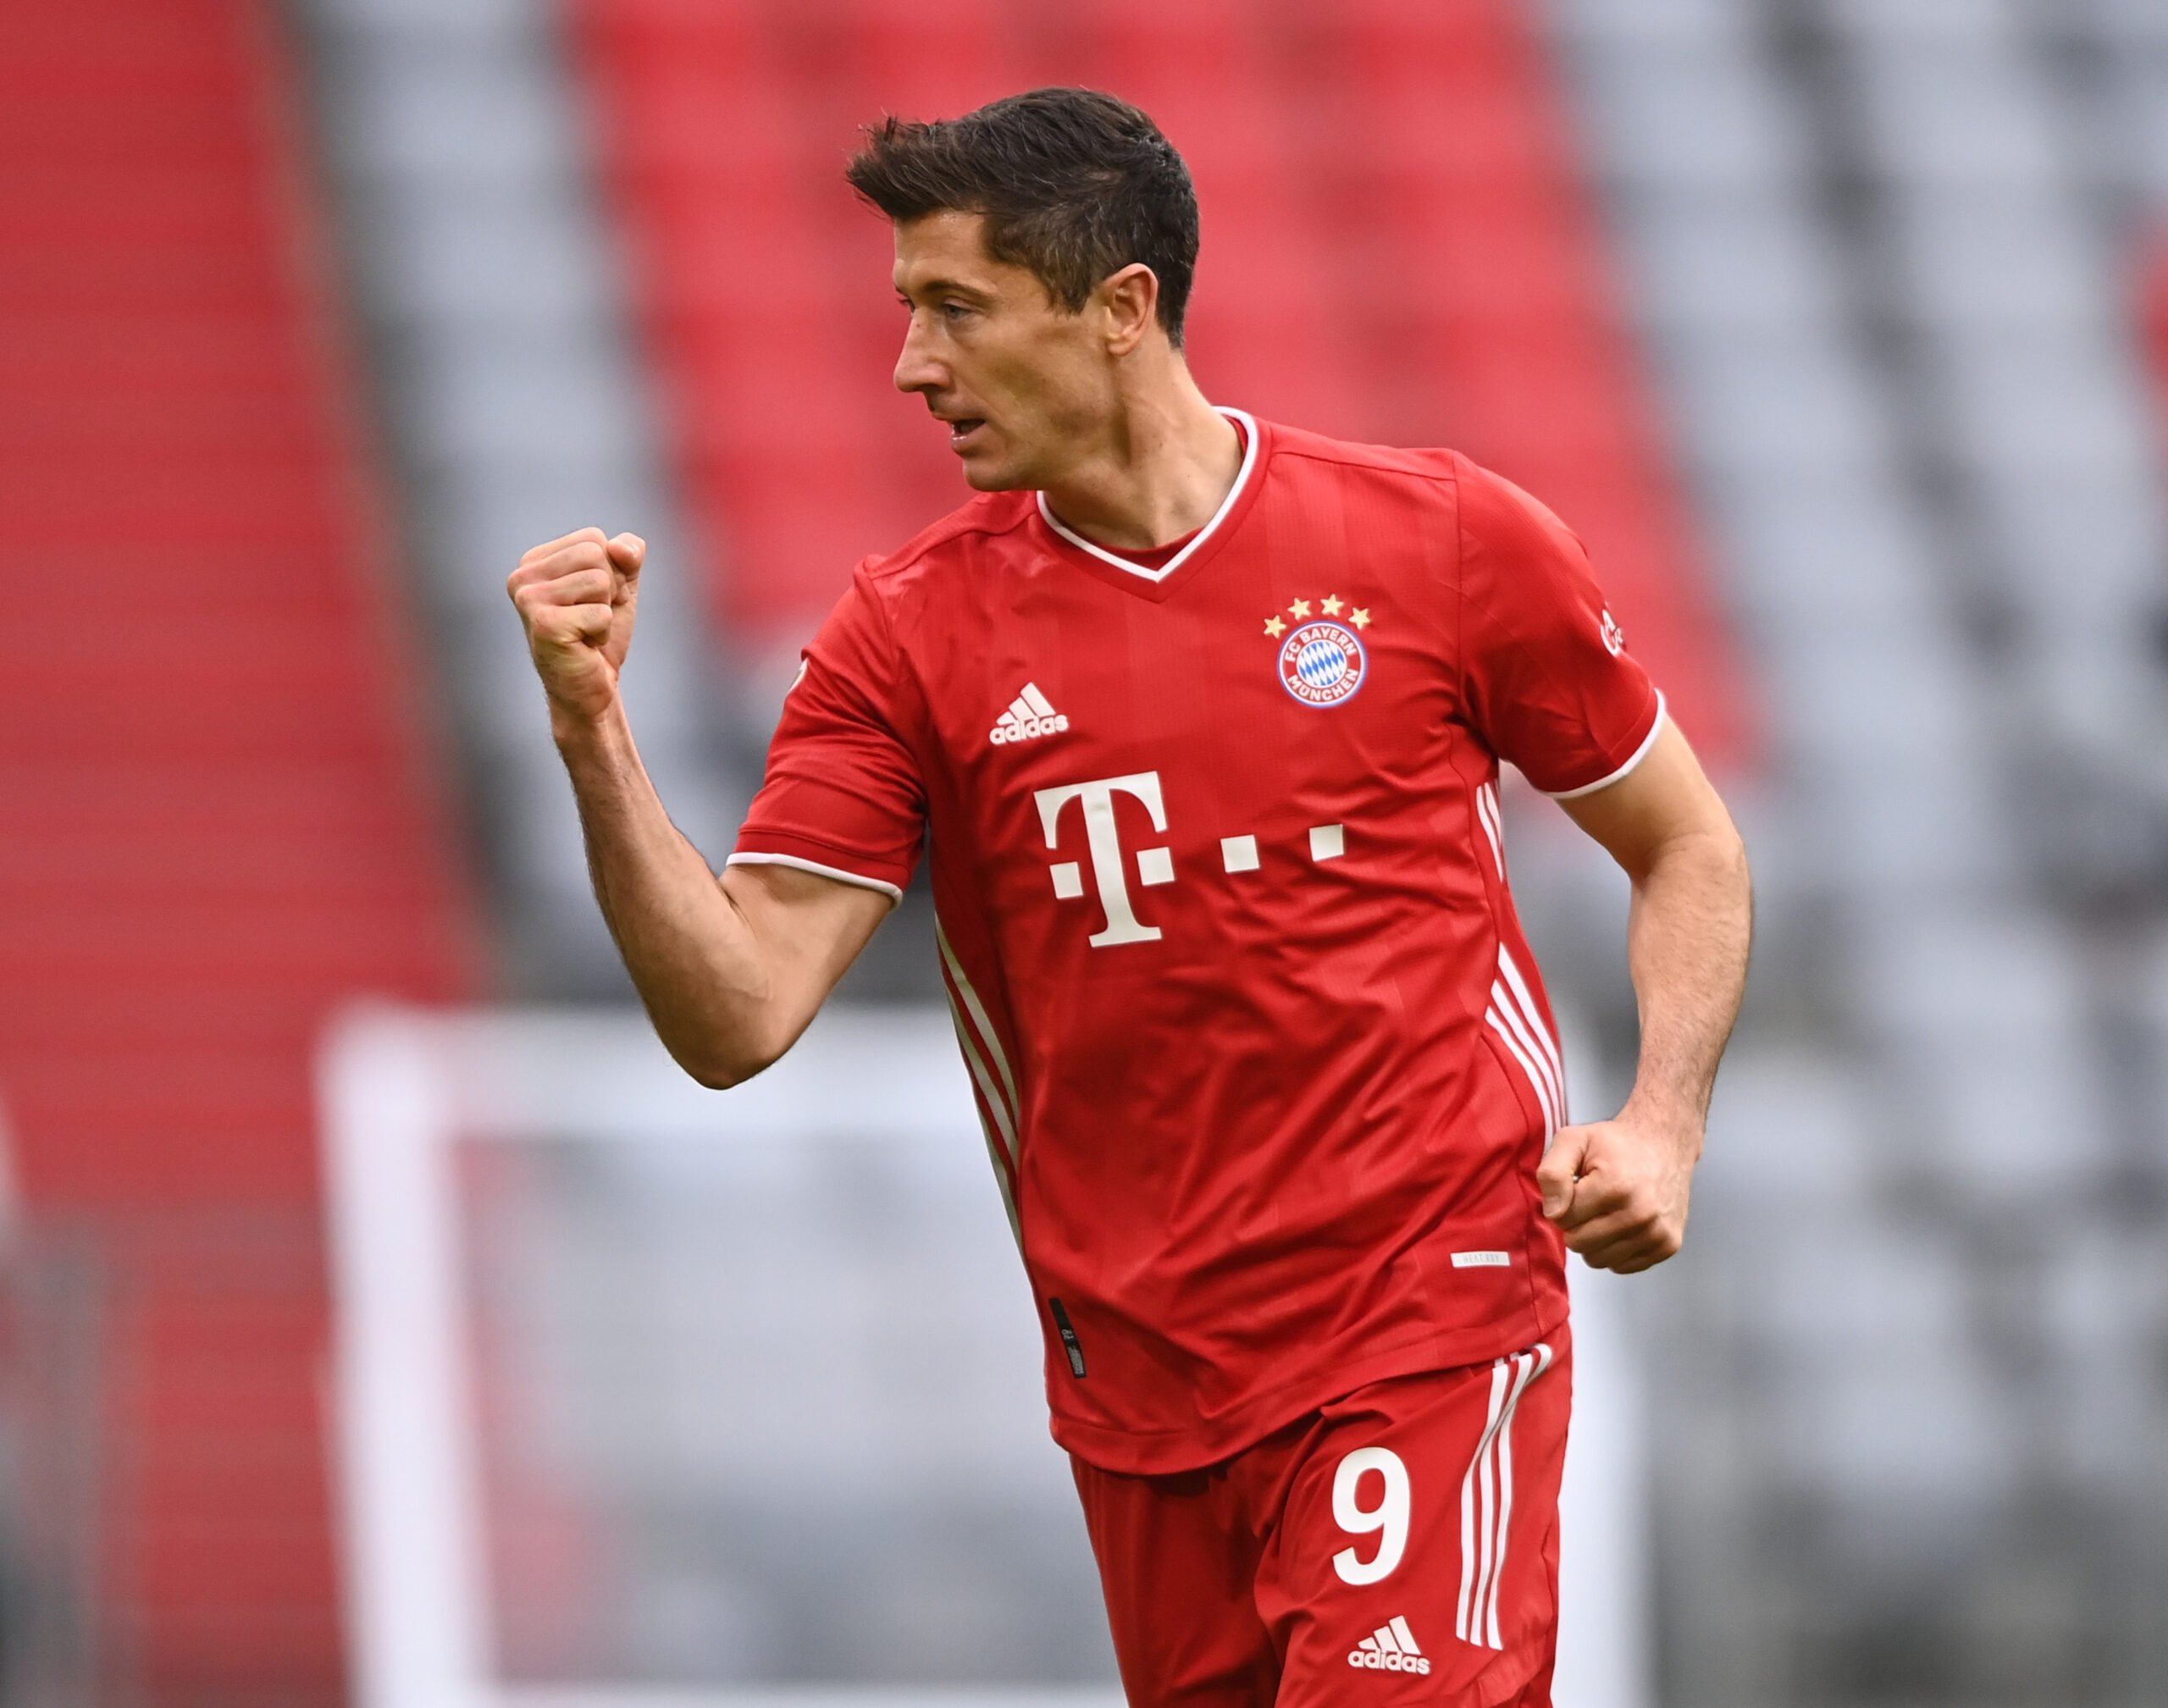 Lewandowski Mit Ungewohnlicher Bitte Flick Uberrascht Aktuelle Fc Bayern News Transfergeruchte Hintergrundberichte Uvm